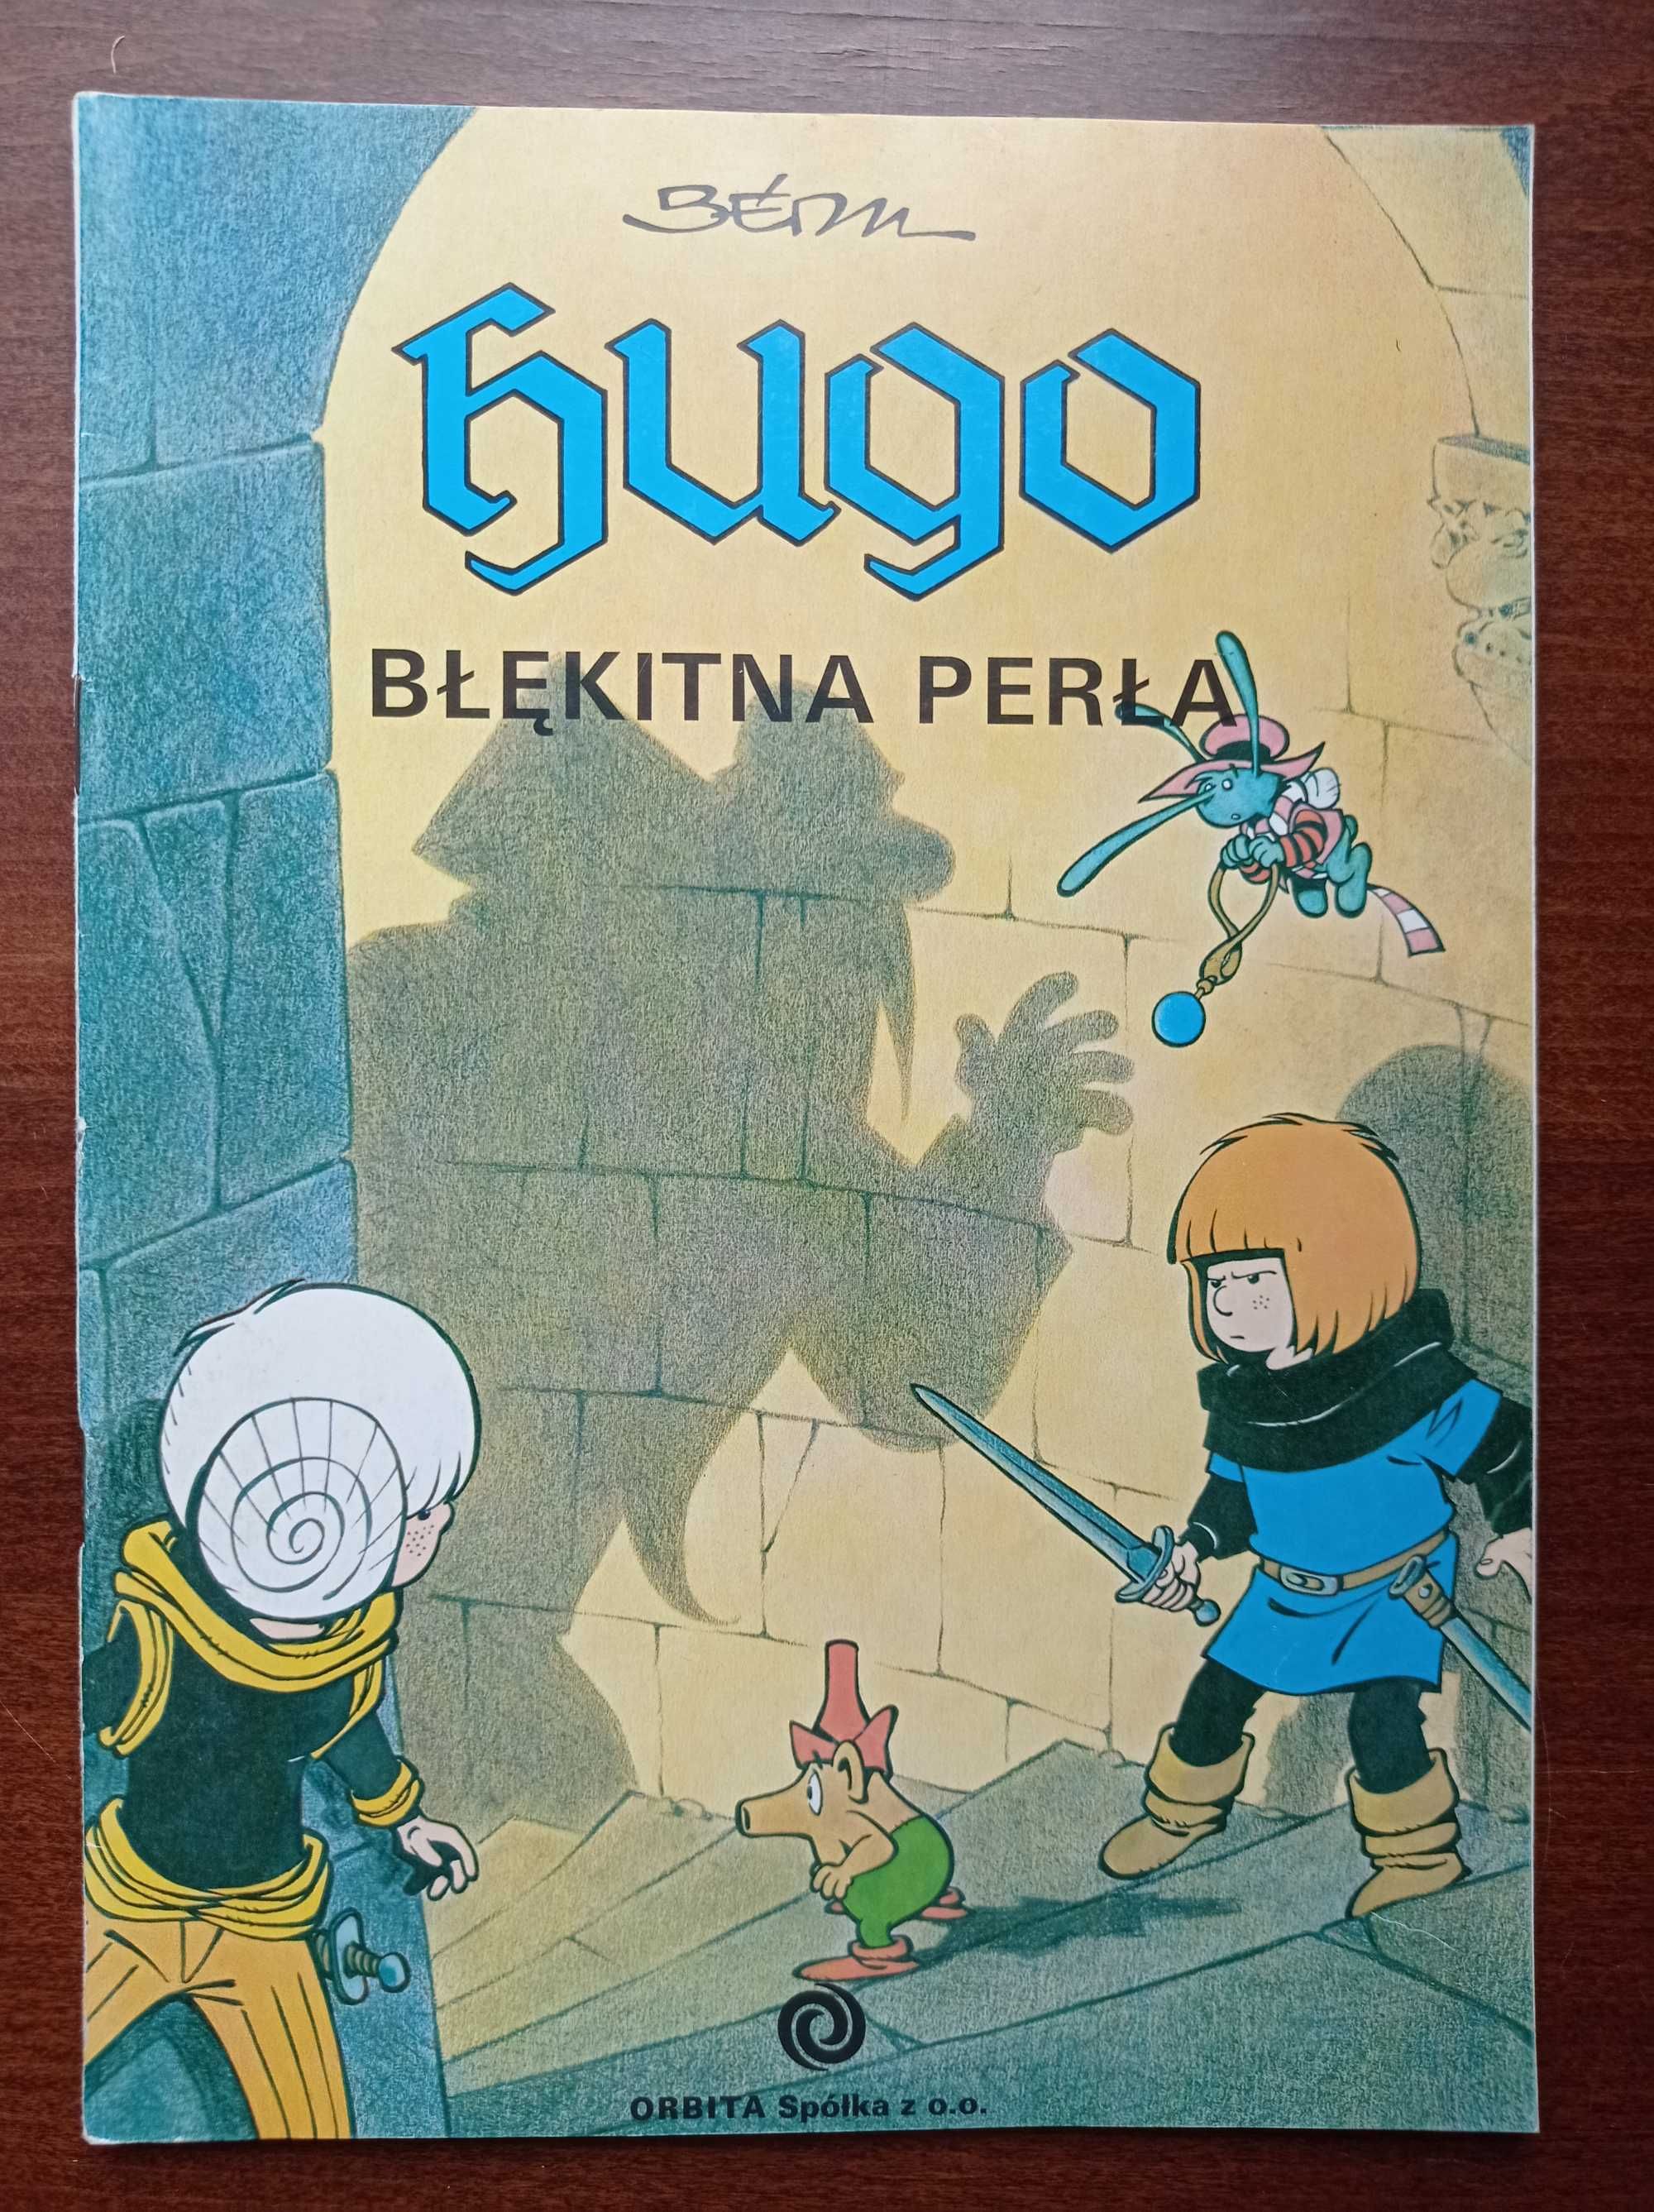 Hugo Błękitna perła Orbita 1990